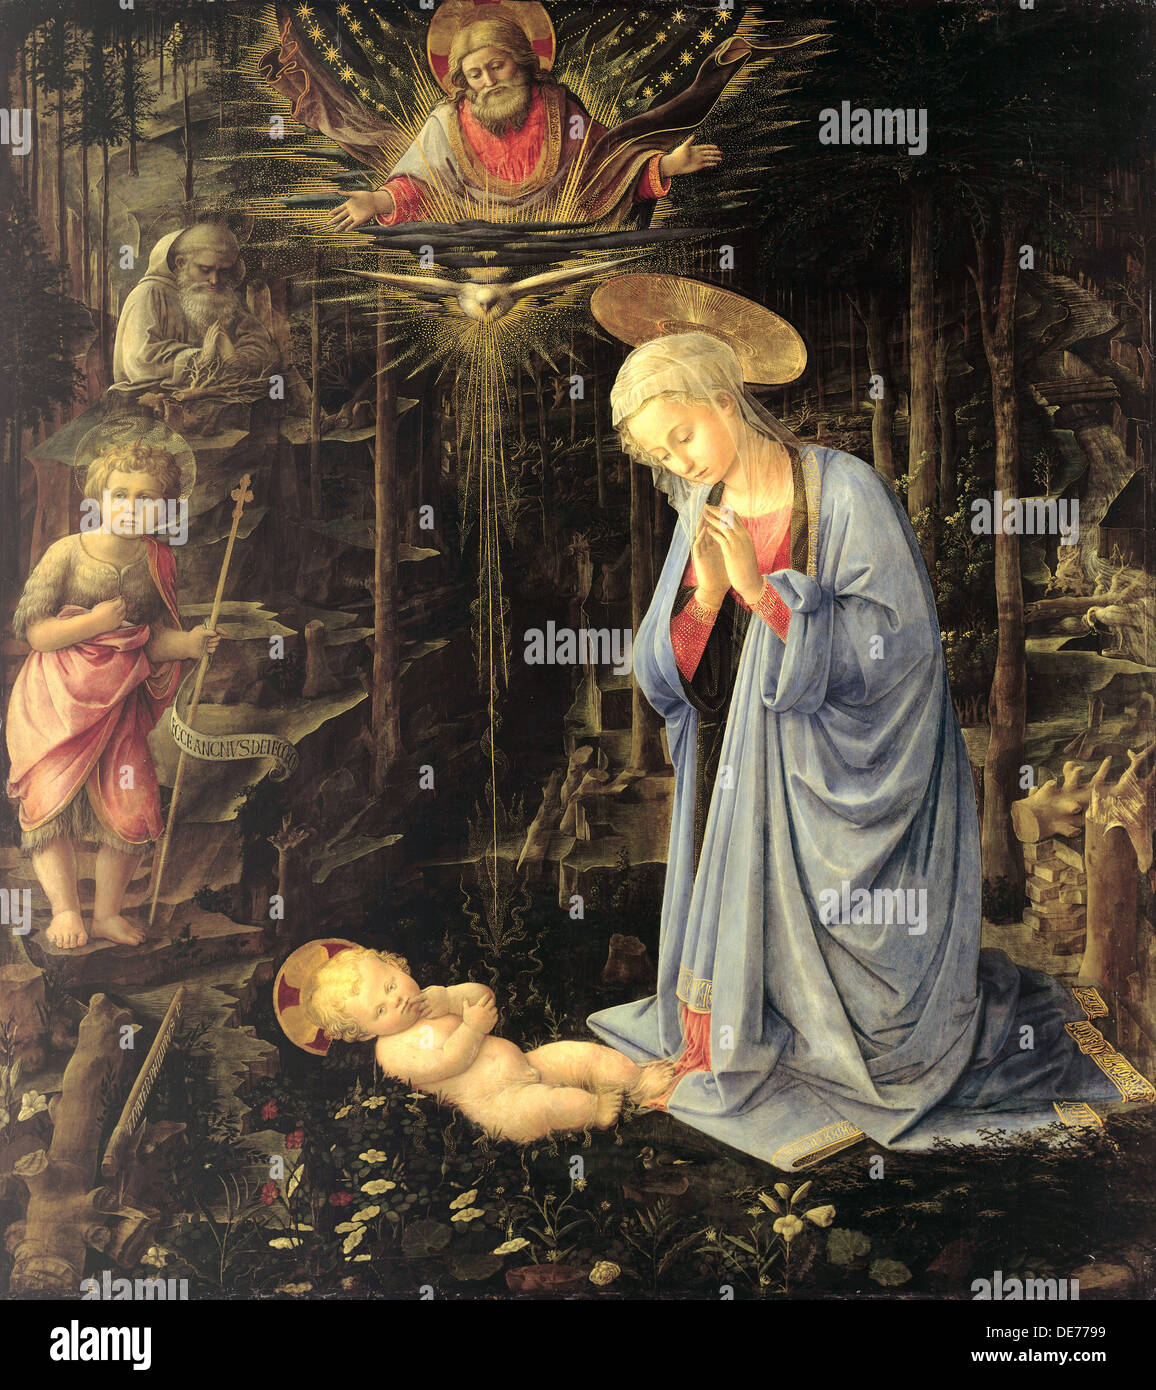 L Adorazione nella foresta, 1459. Artista: Lippi, Fra Filippo (1406-1469) Foto Stock